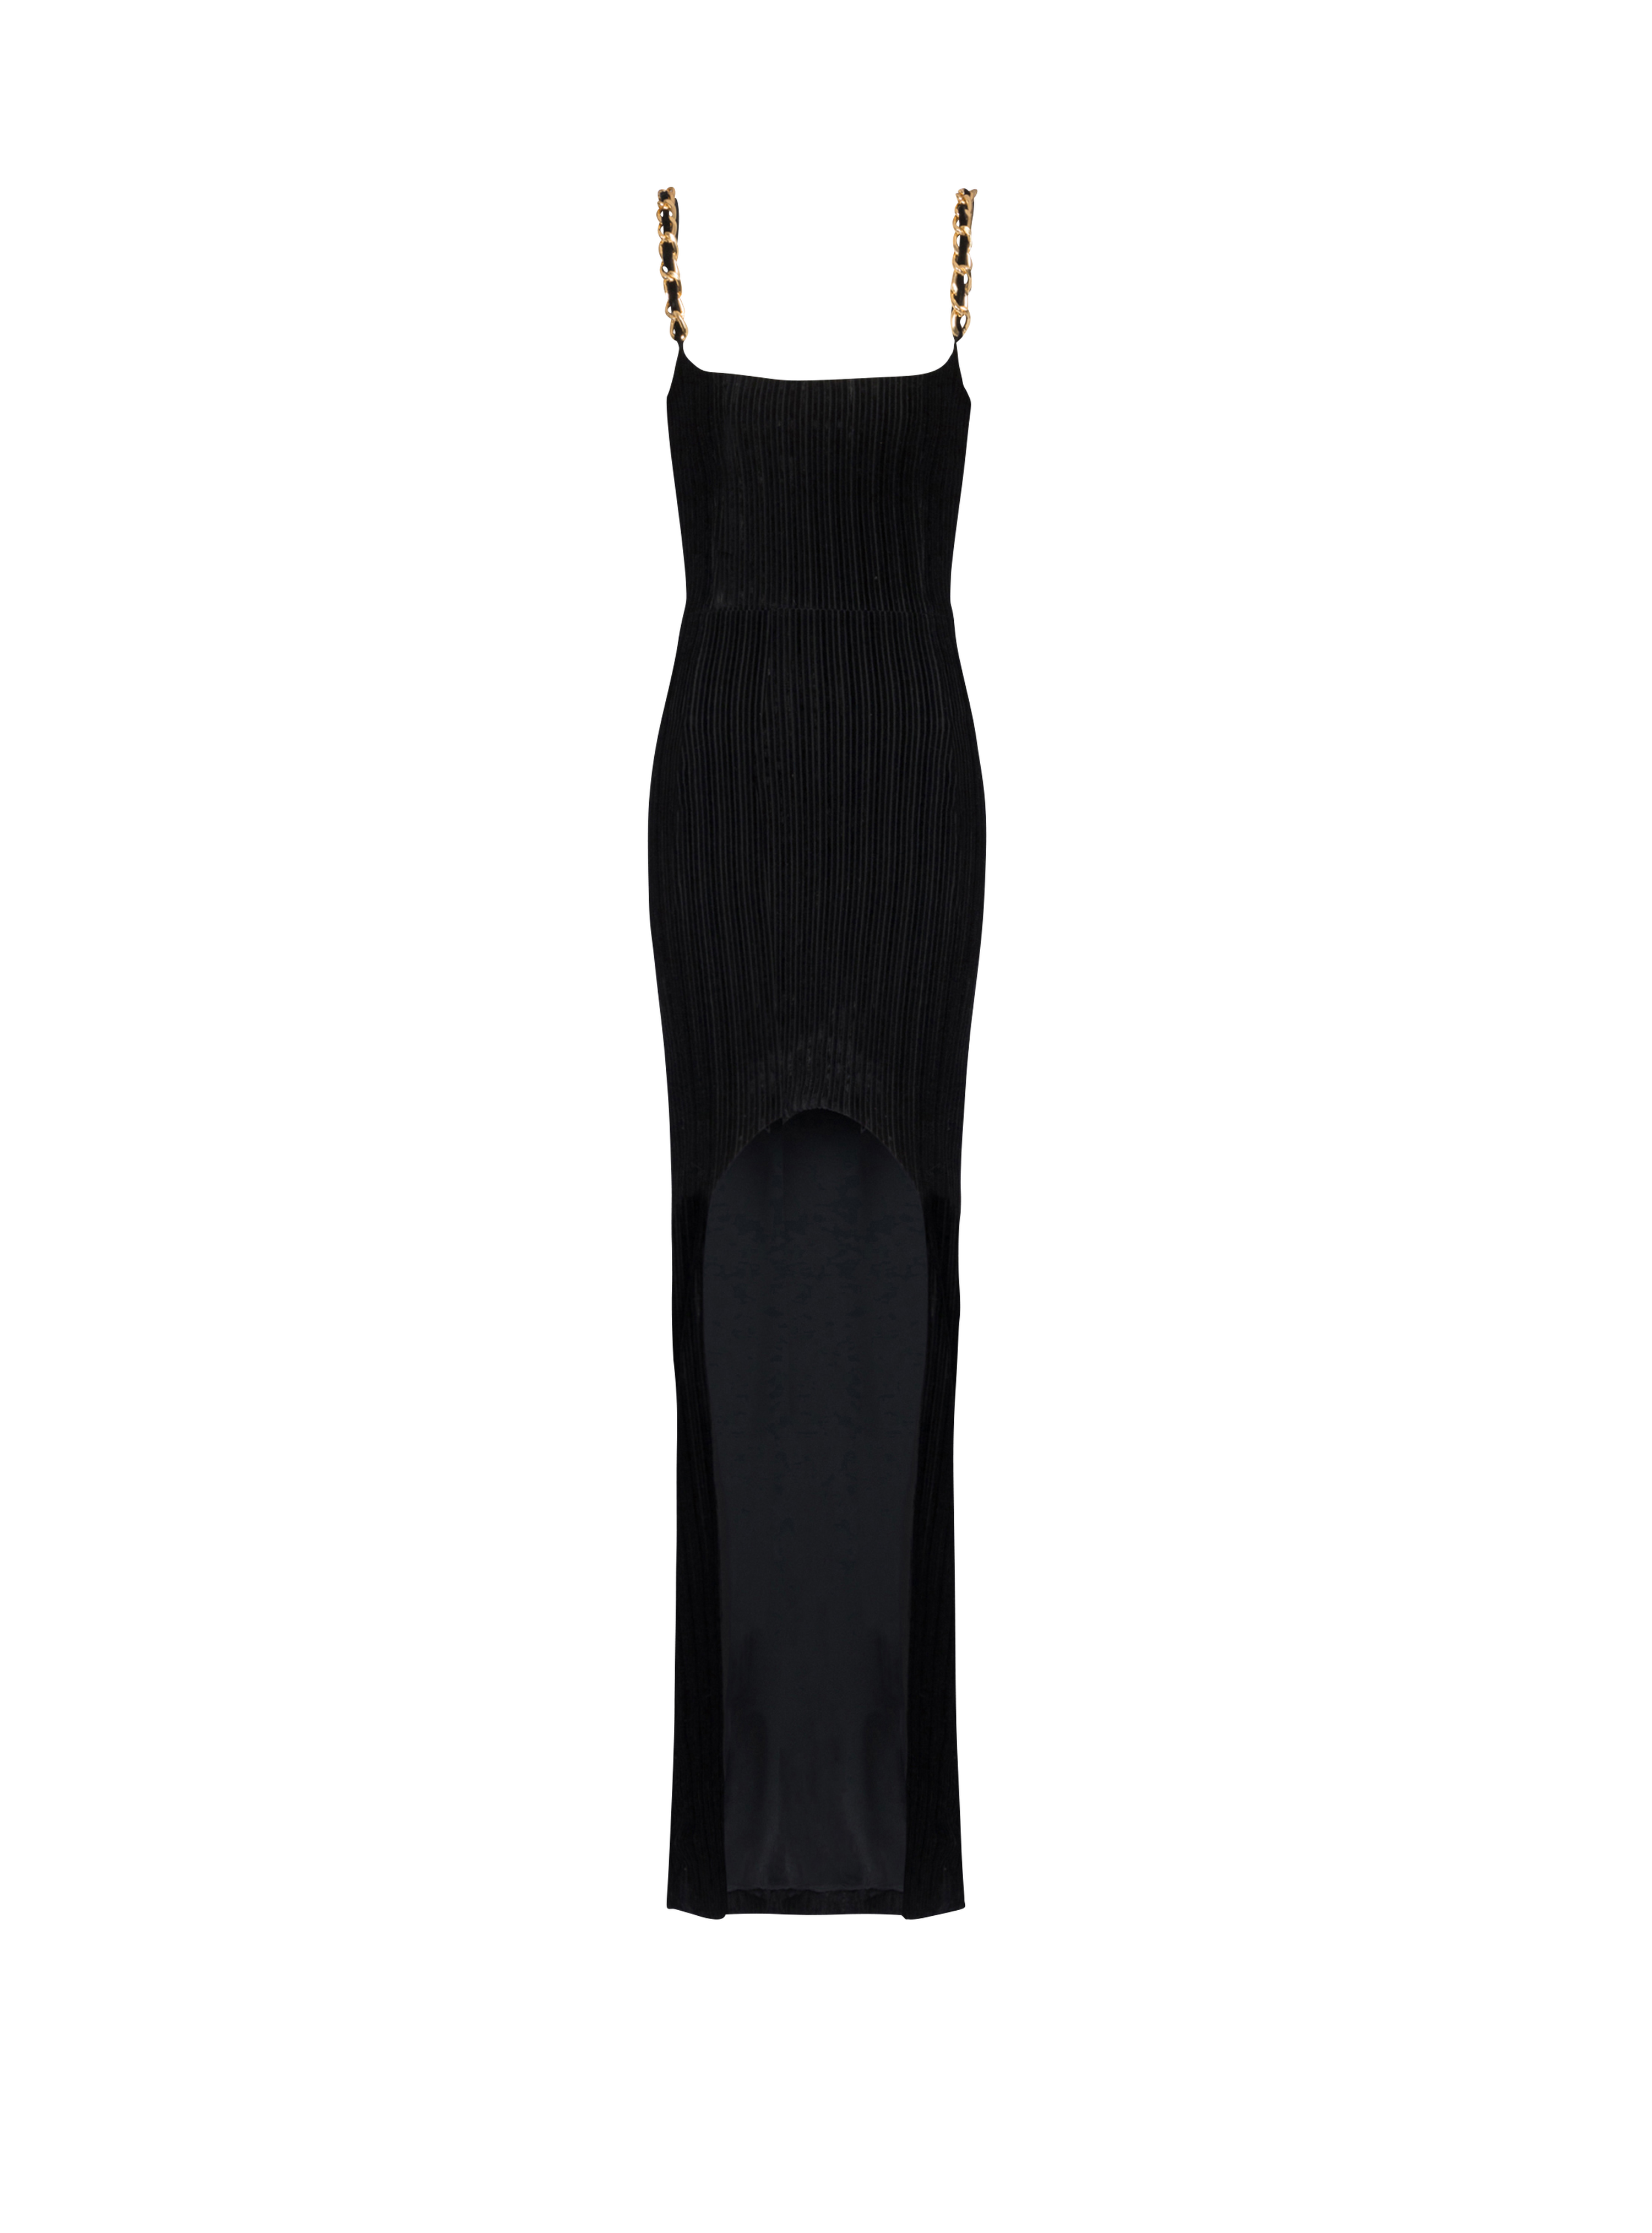 Striped velvet long dress, black